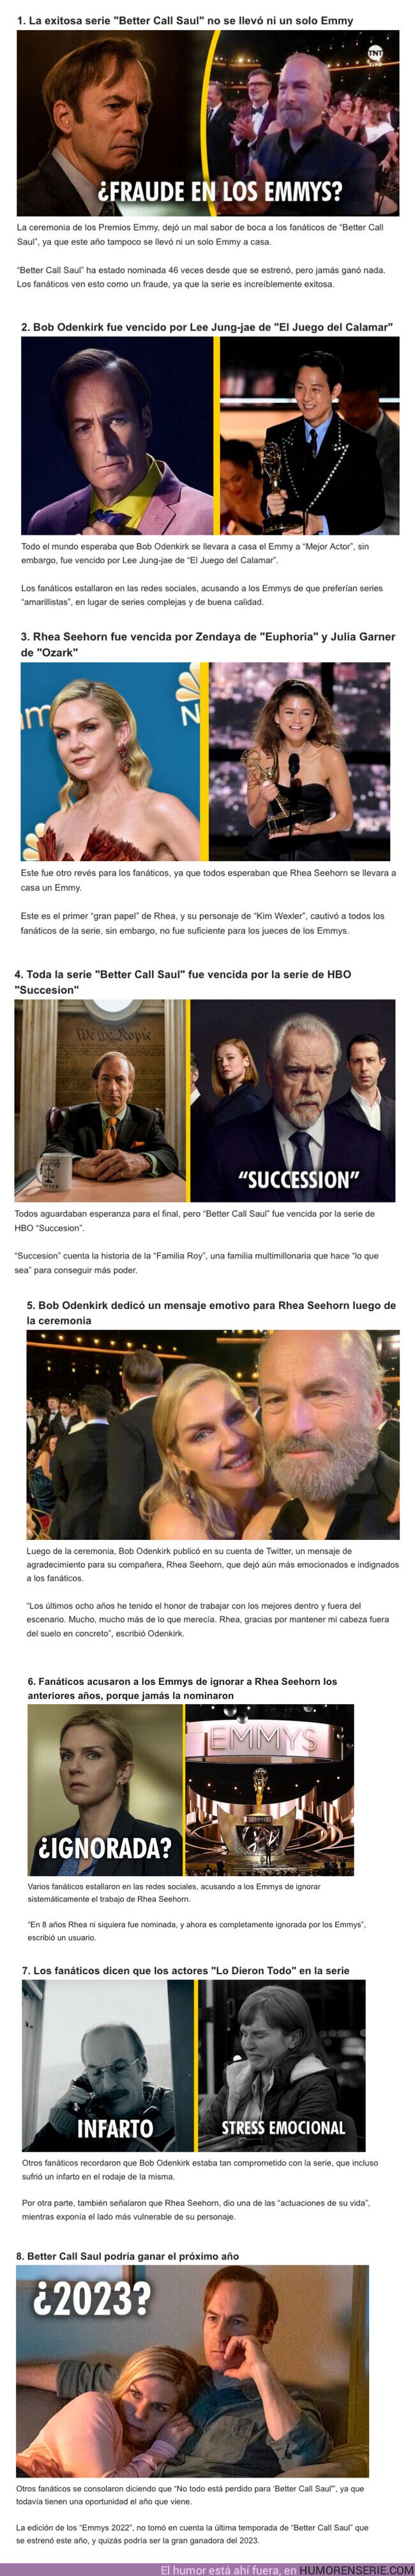 108269 - GALERÍA: 8 hechos para entender por qué los fanáticos de “Better Call Saul” quieren cancelar los Premios Emmy